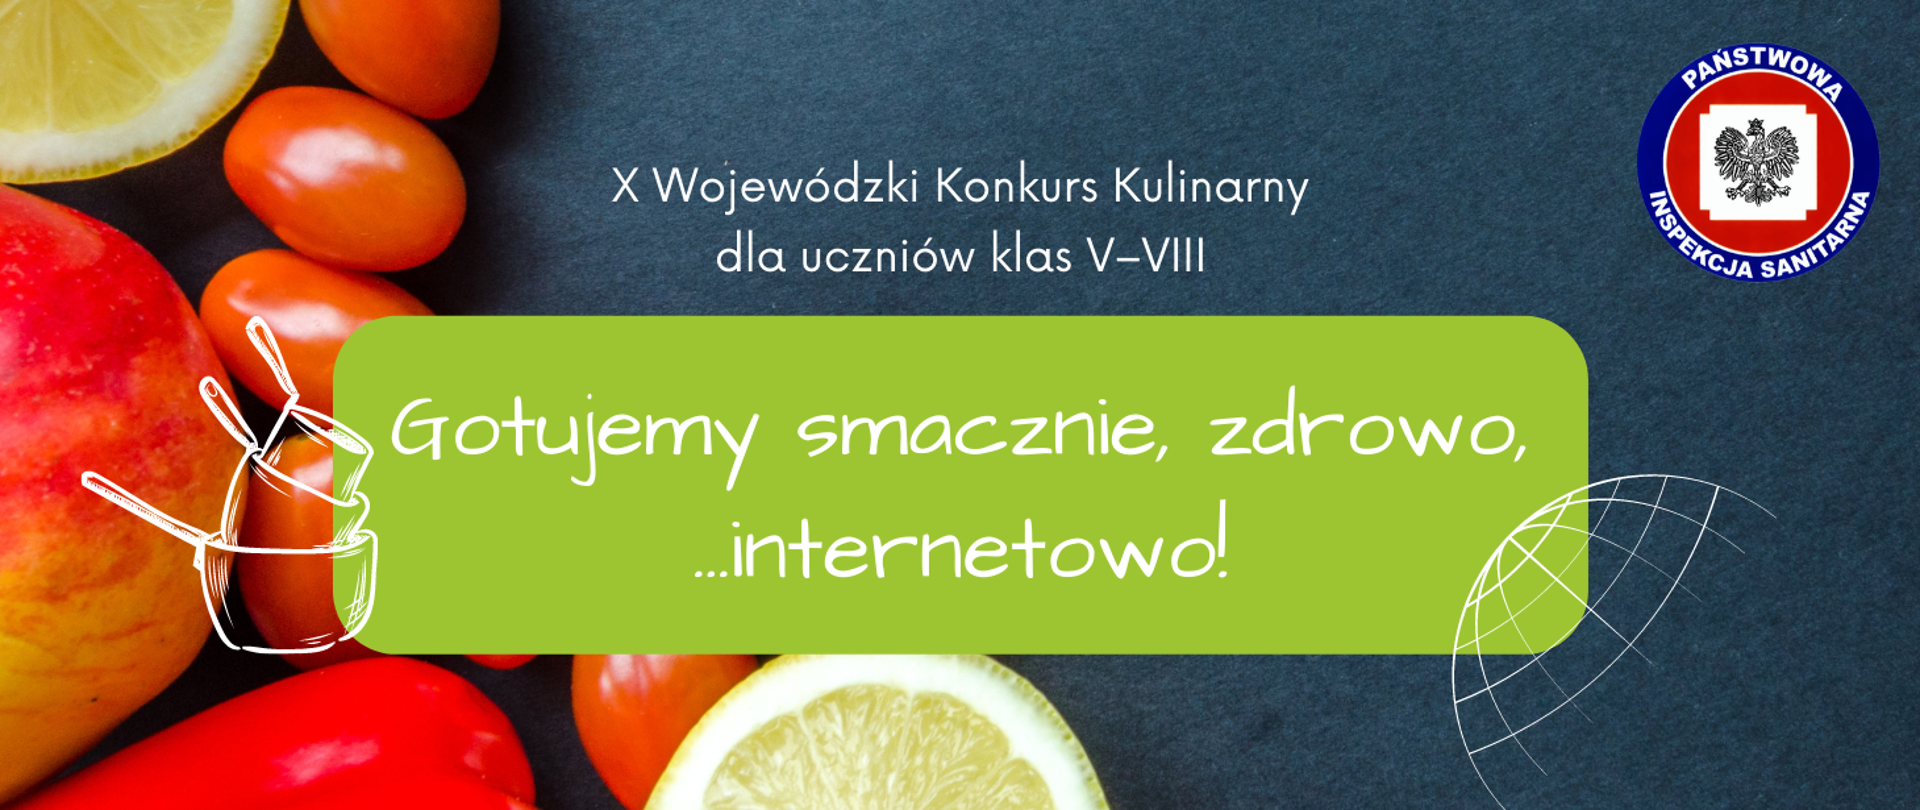 X Wojewódzki Konkurs Kulinarny „Gotujemy smacznie, zdrowo, internetowo”